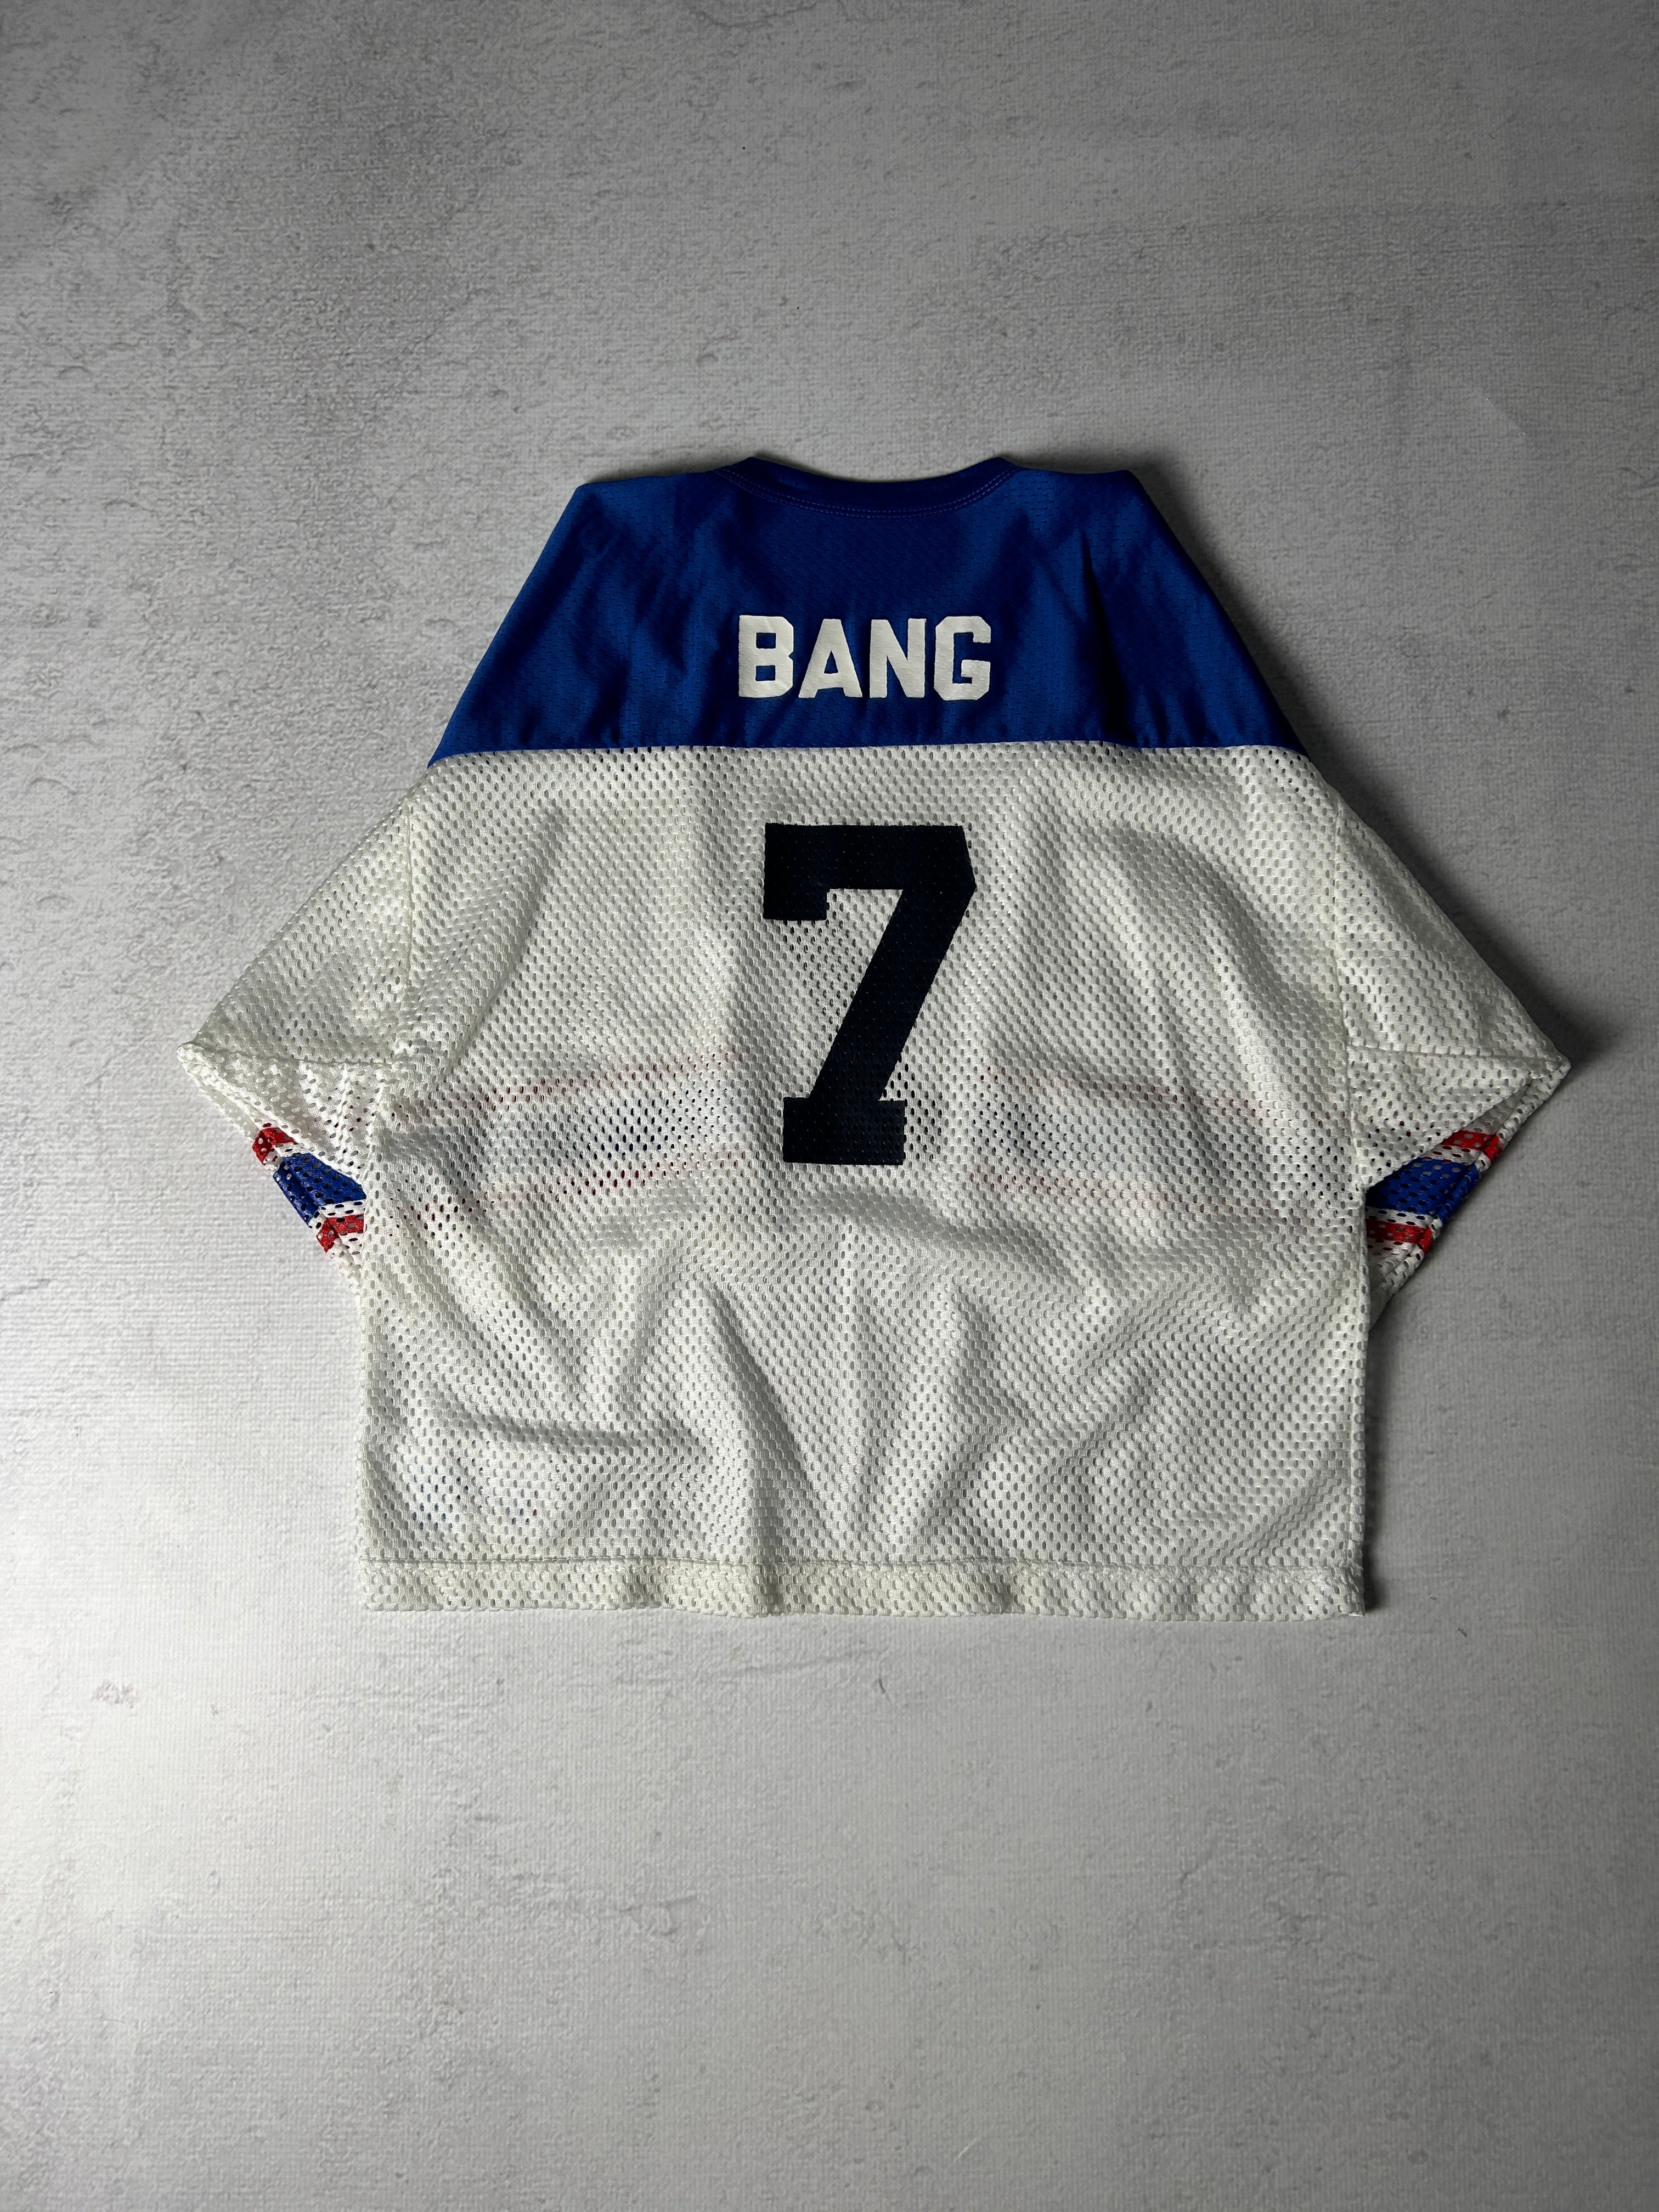 Vintage Champion Bang #7 Football Jersey - Men's Large